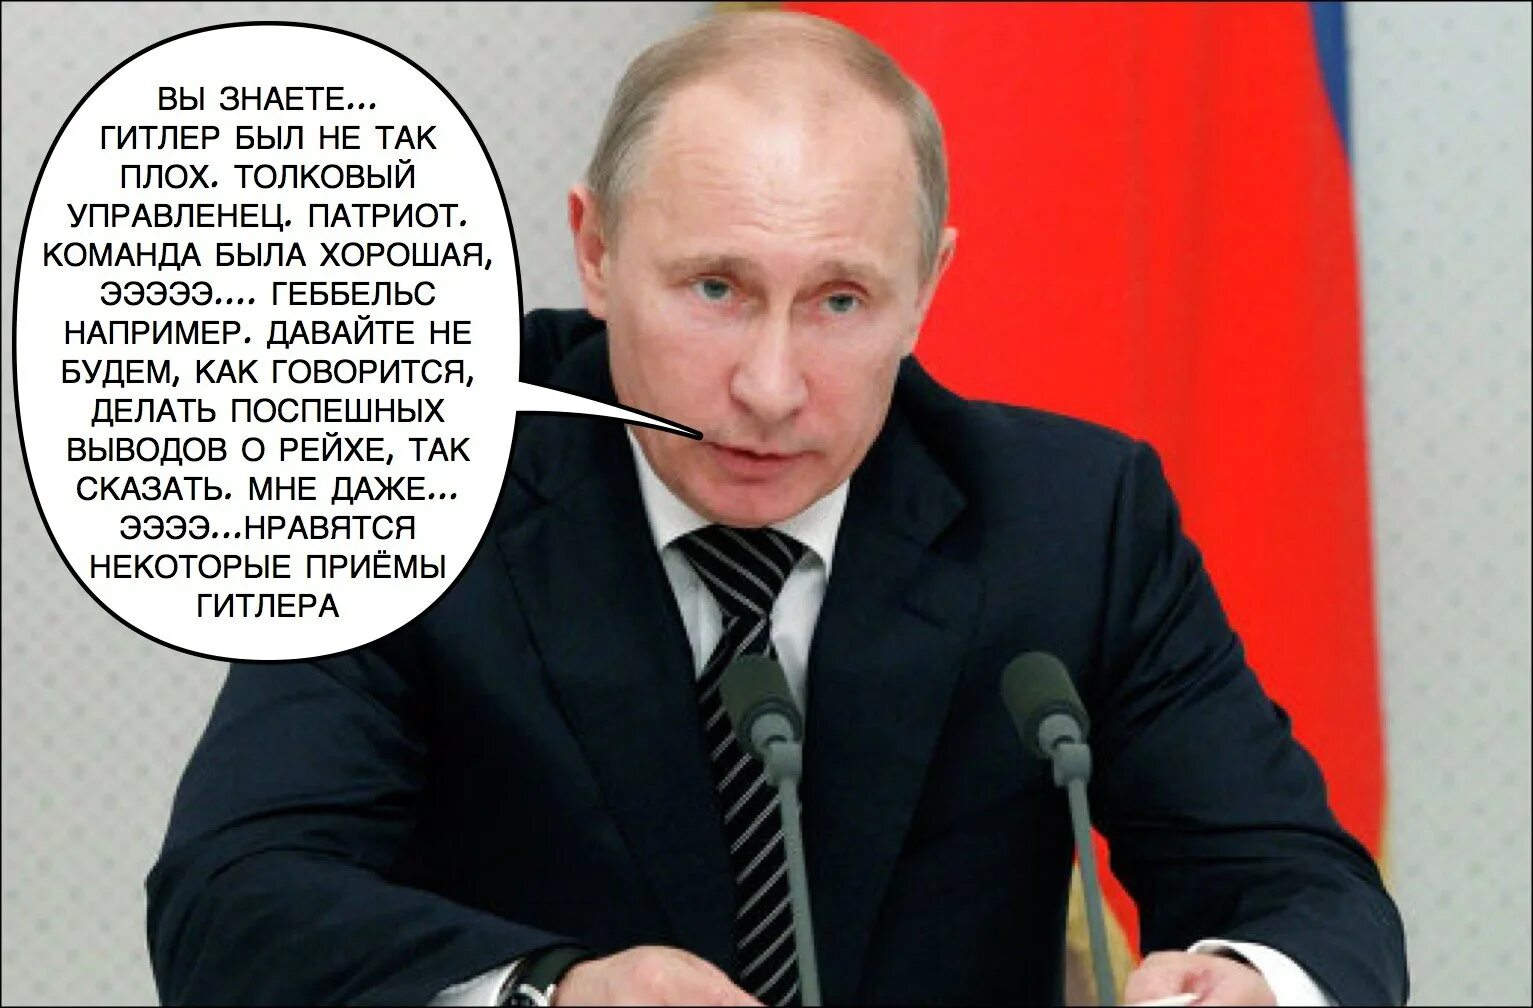 Как говорится что сделано то сделано. Высказывание Путина о Геббельсе.